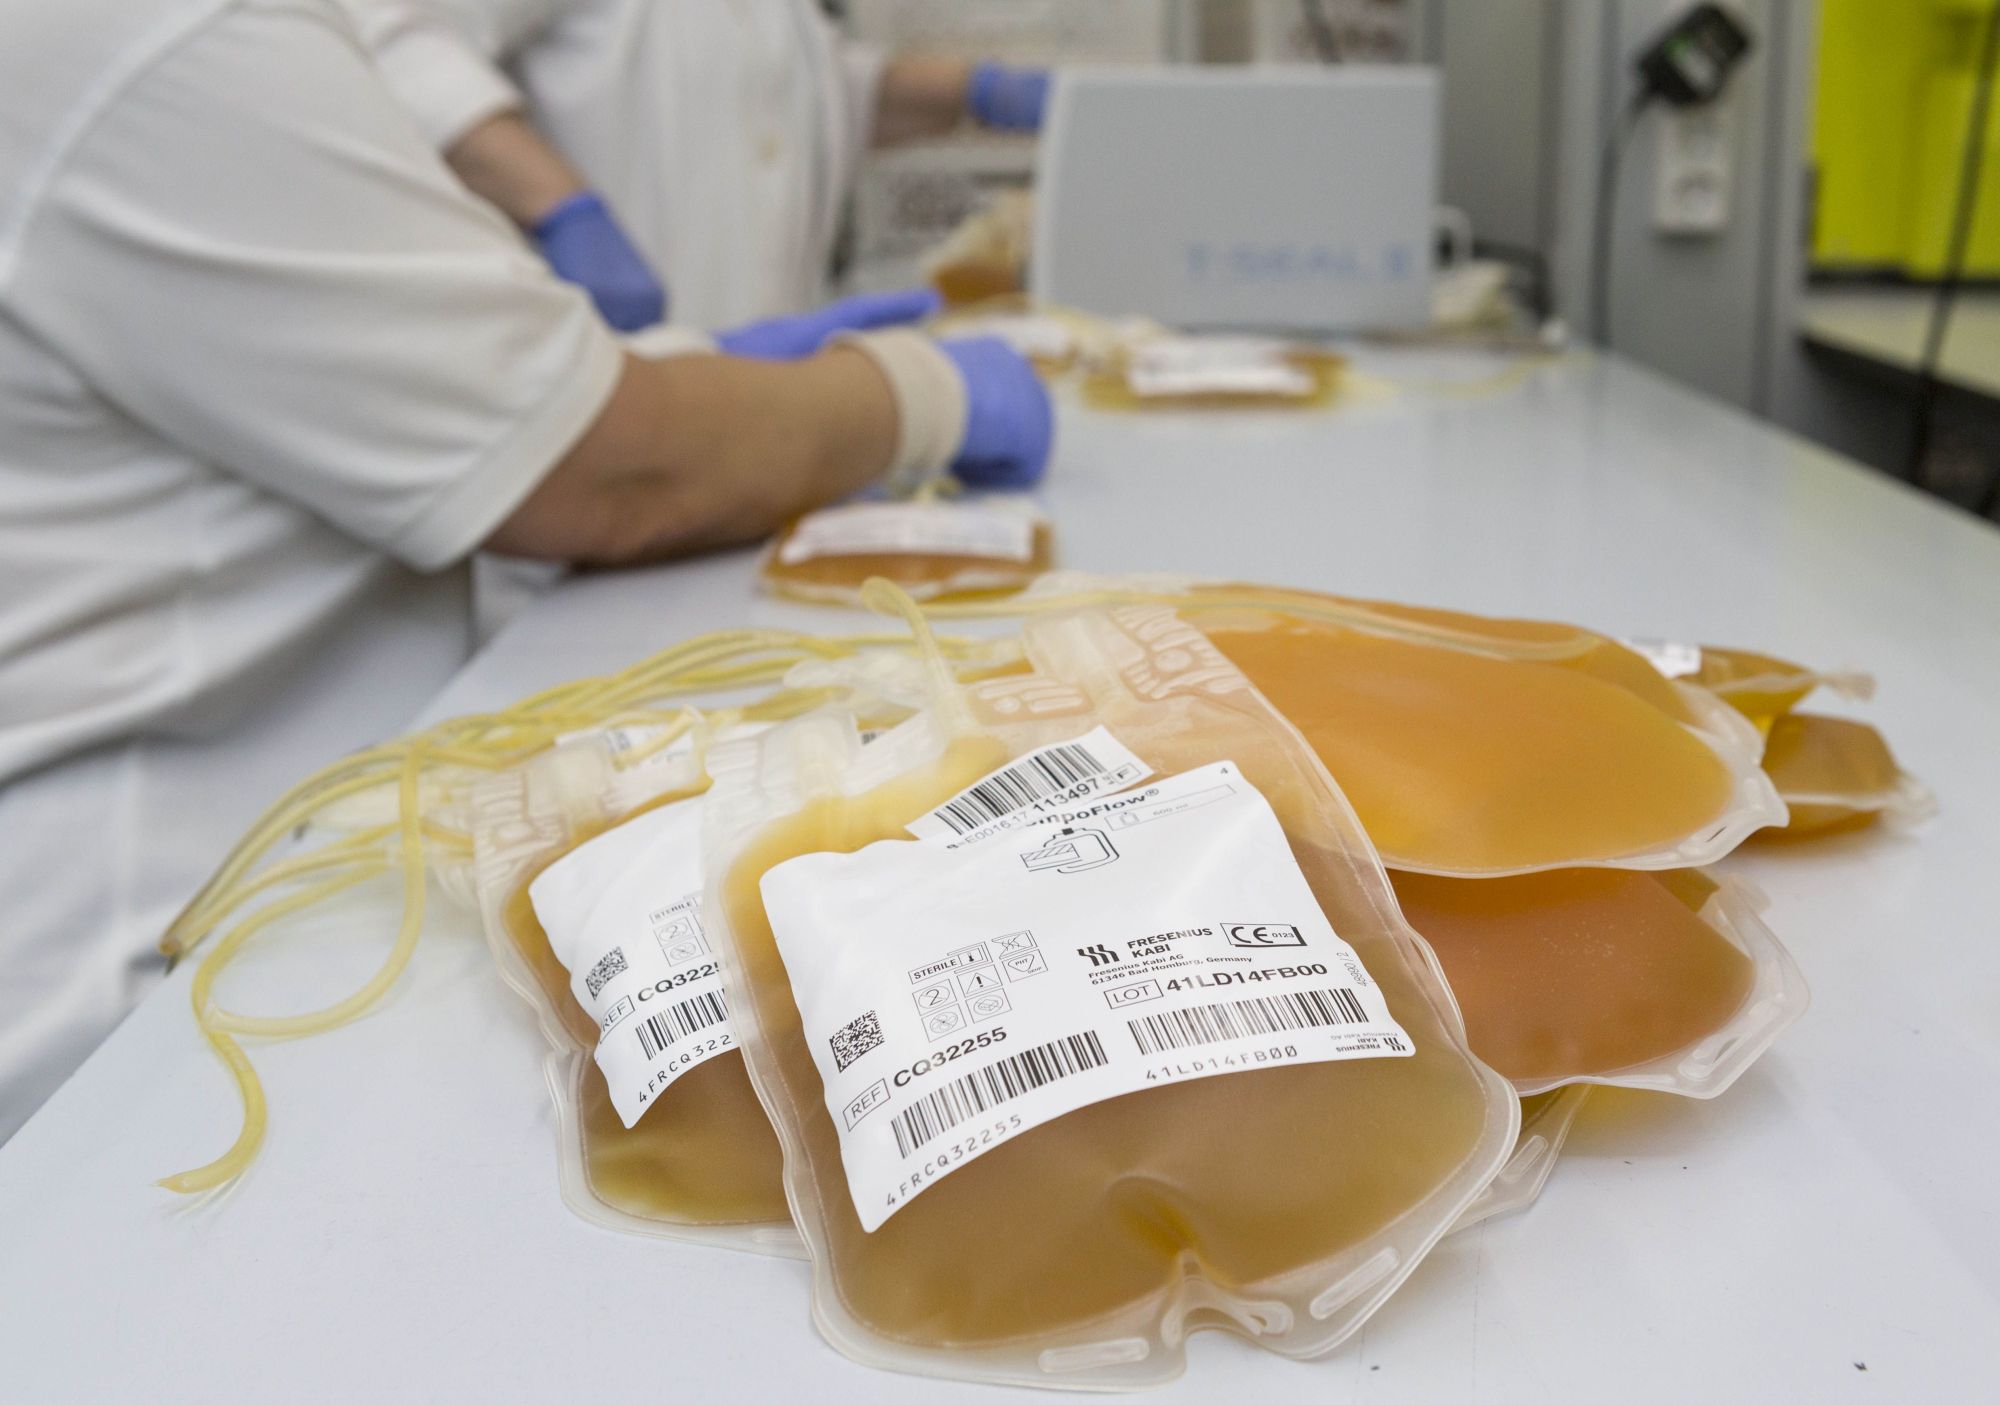 Donación | Centro de Transfusión